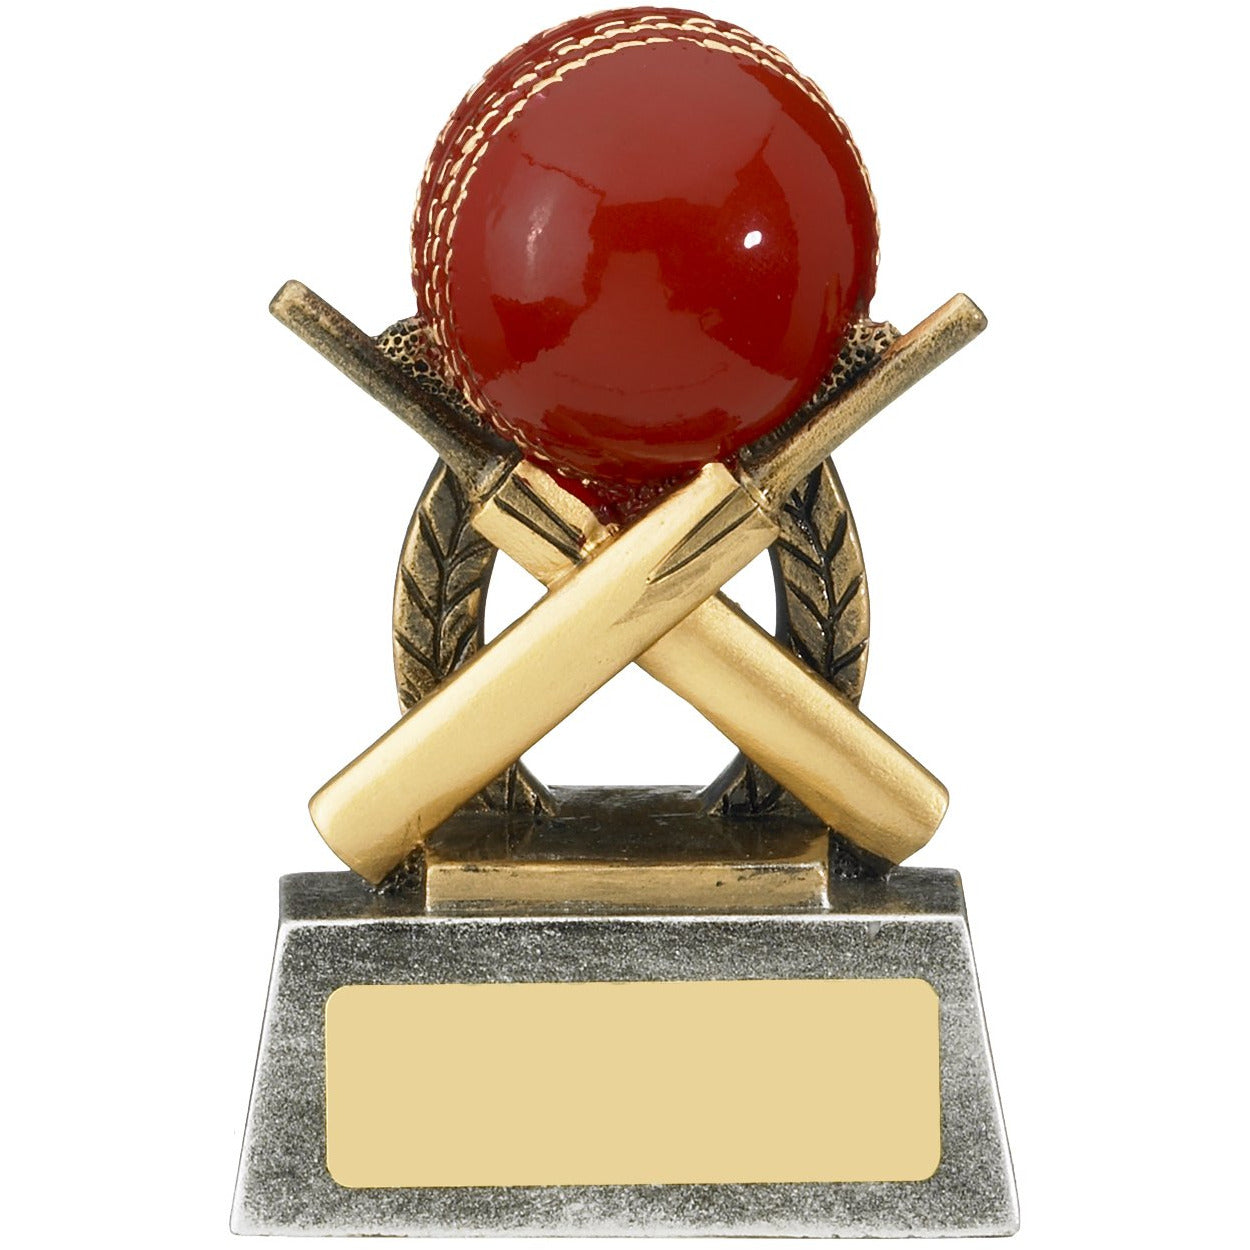 Escapade Bat and Ball Cricket Award